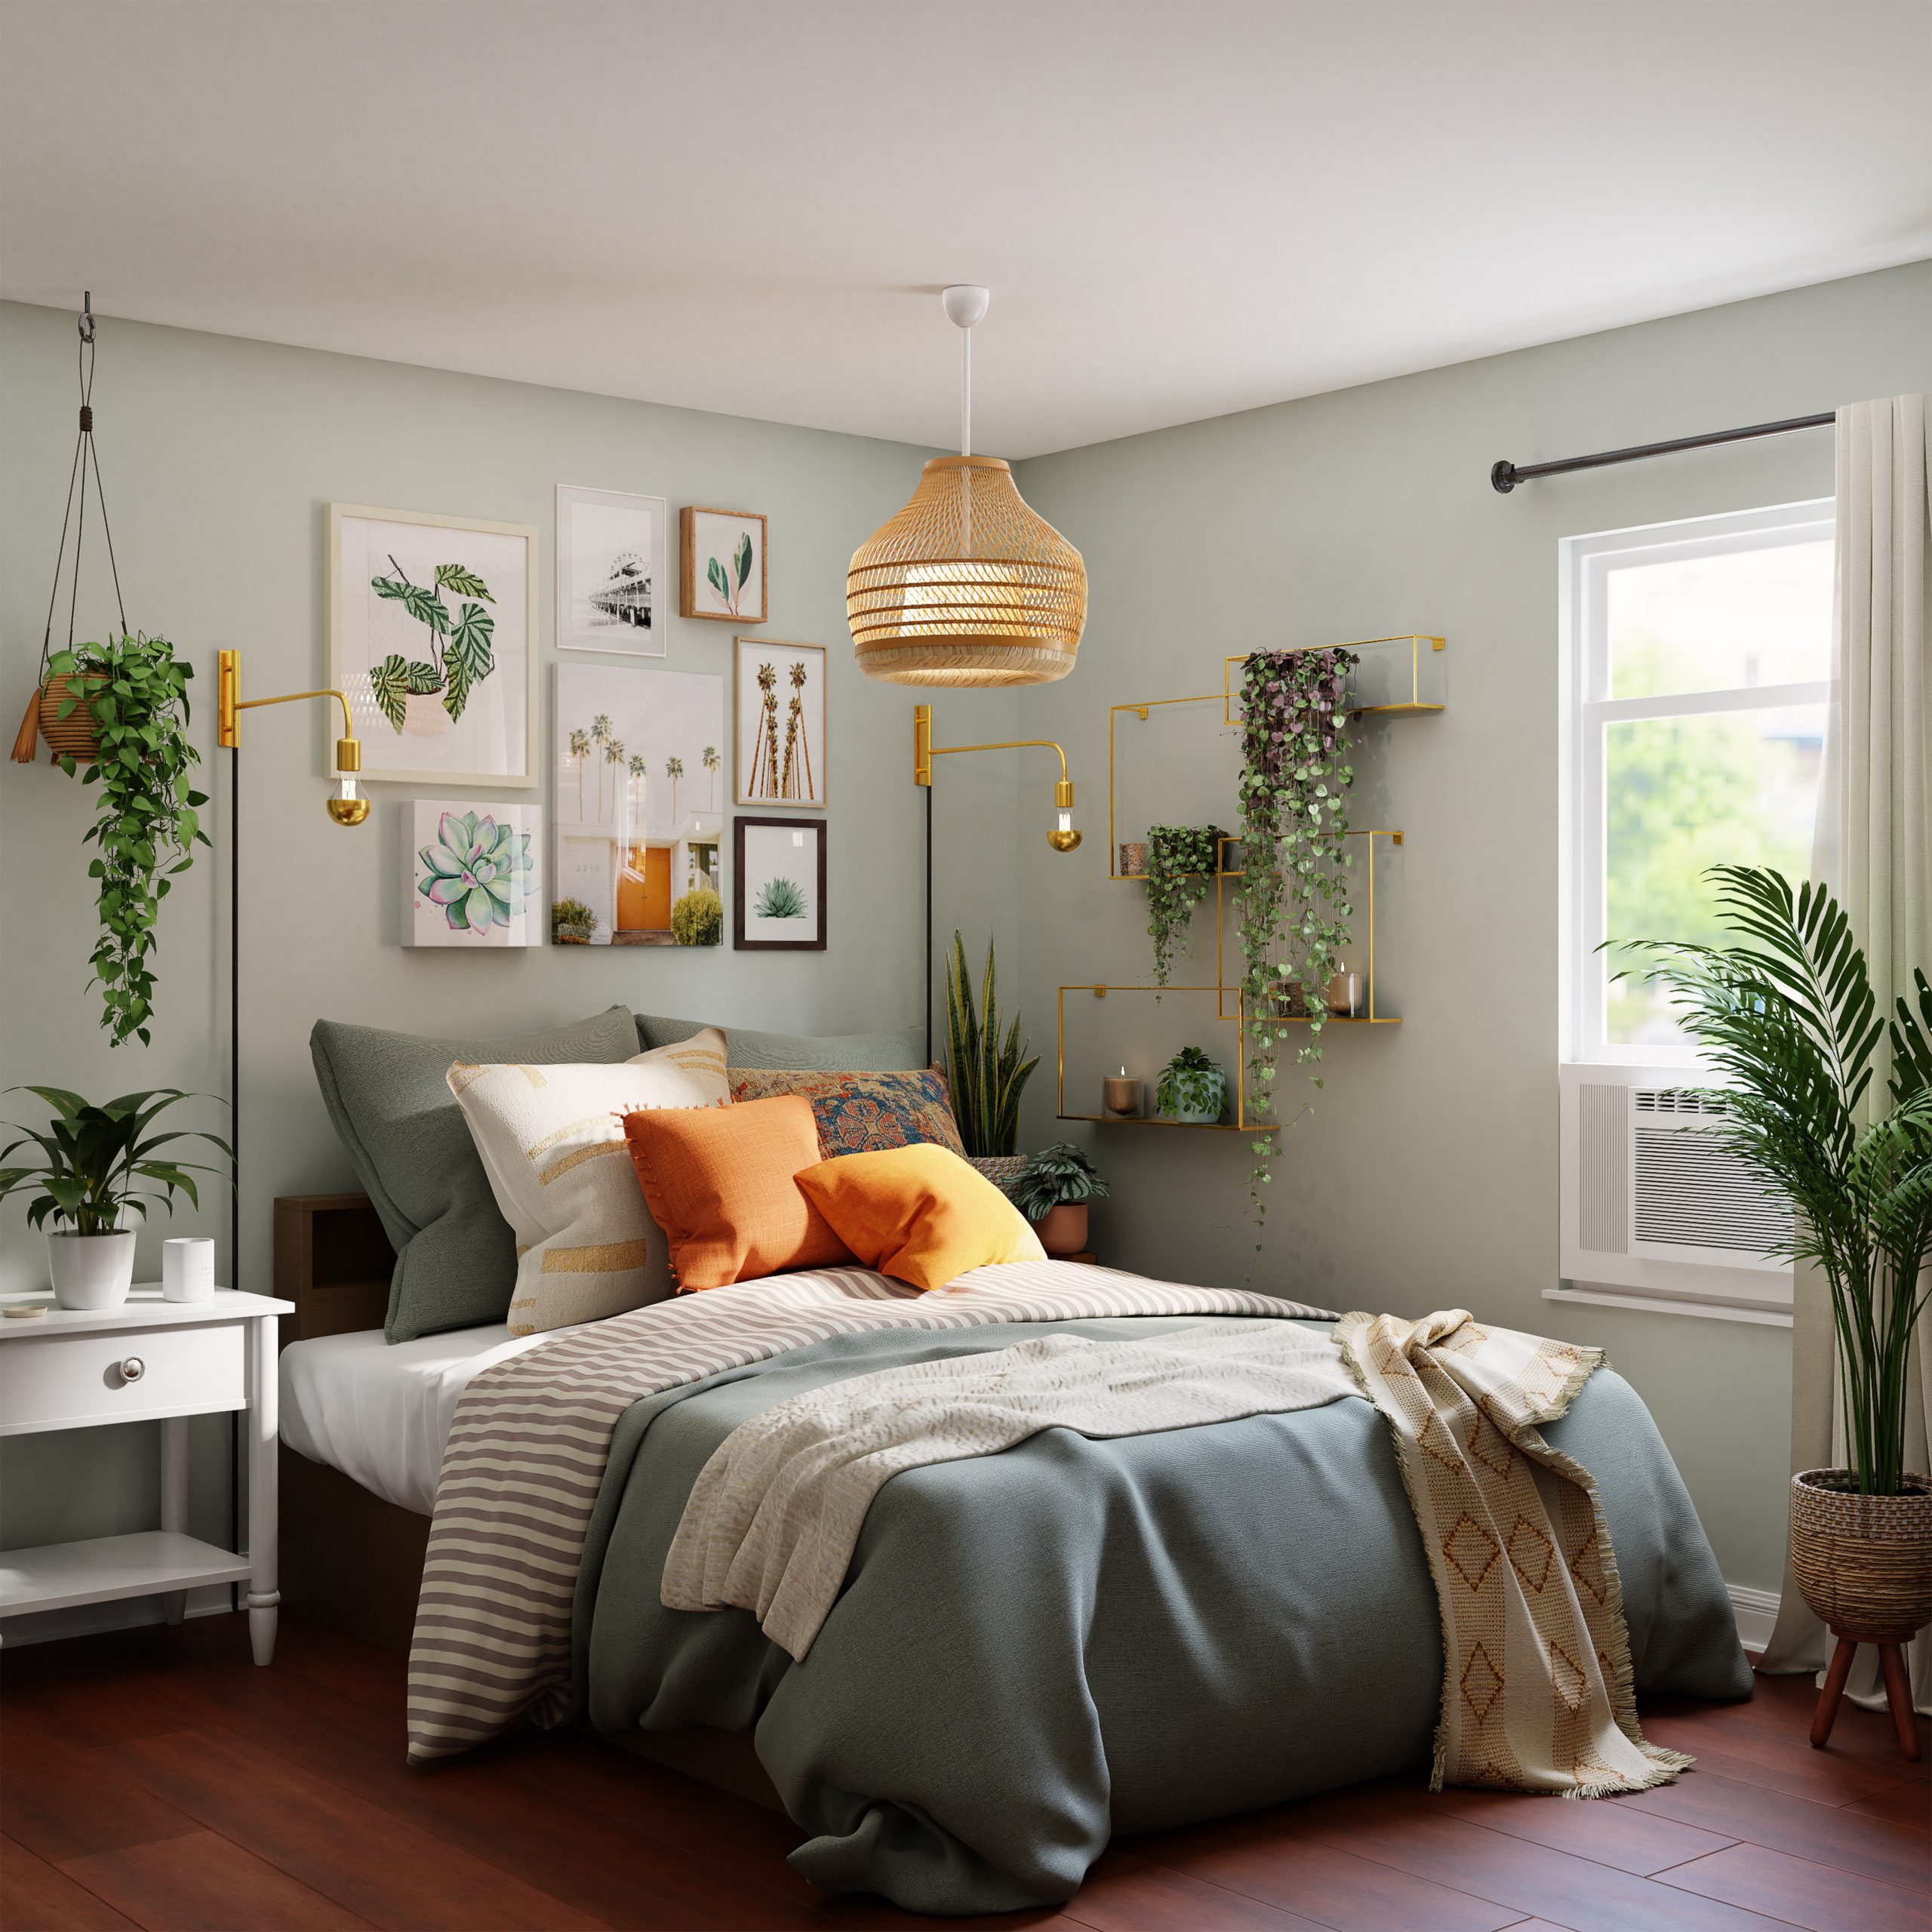 Thiết kế phòng ngủ homestay - Cách decor đẹp mắt, thu hút khách hàng